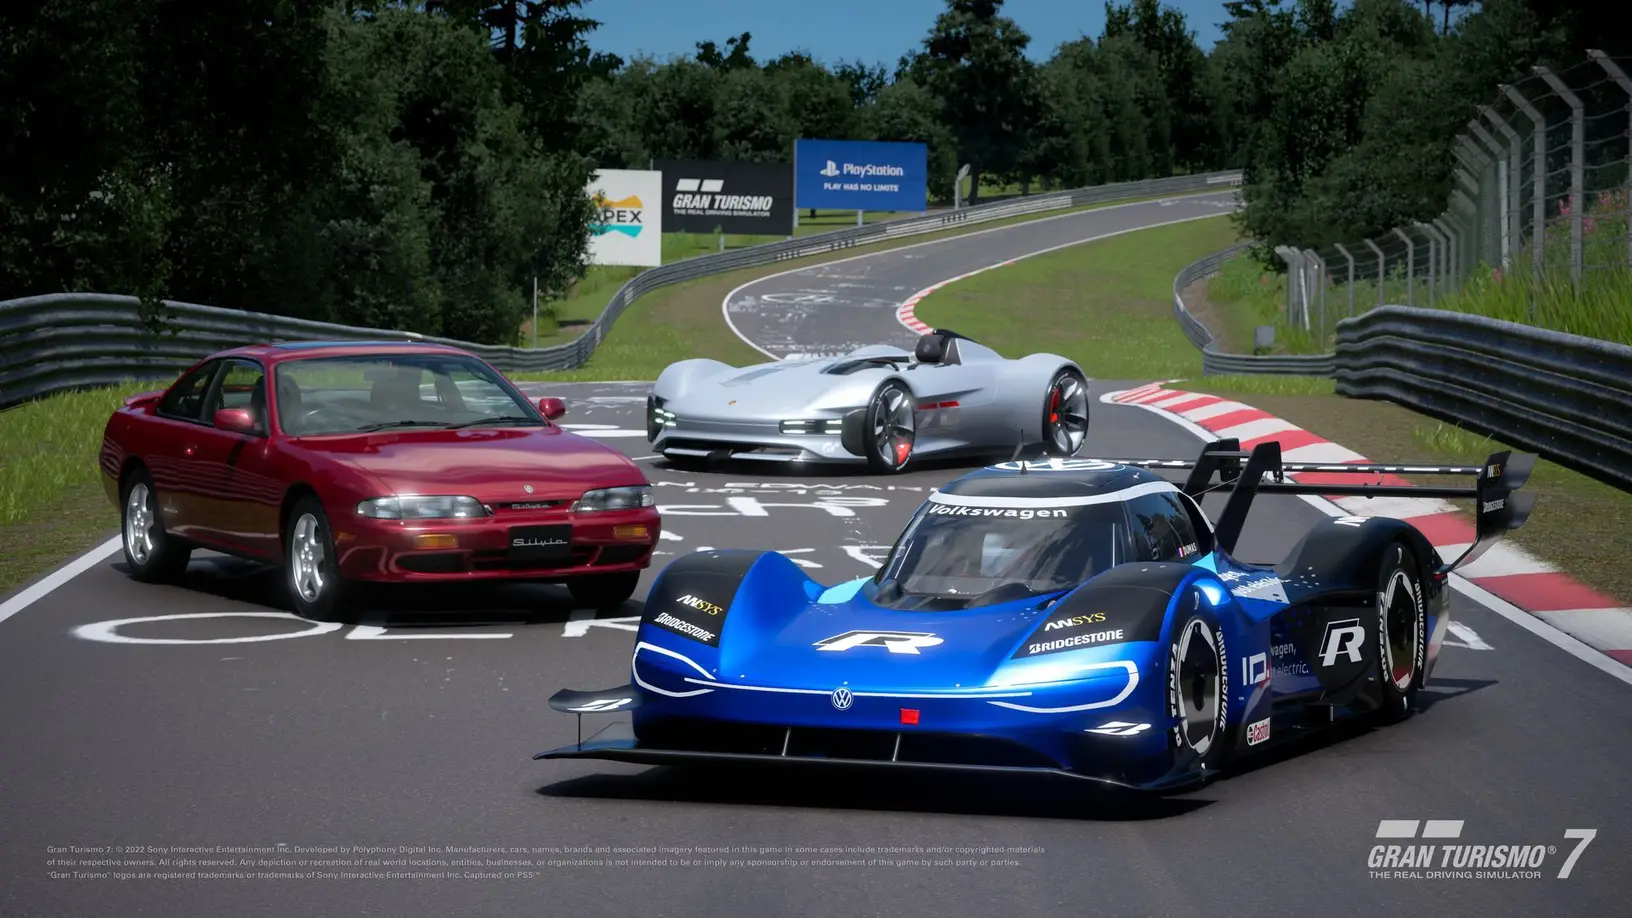 Immagine di Gran Turismo 7 si aggiorna ufficialmente con l'update 1.23 che introduce tre nuove auto